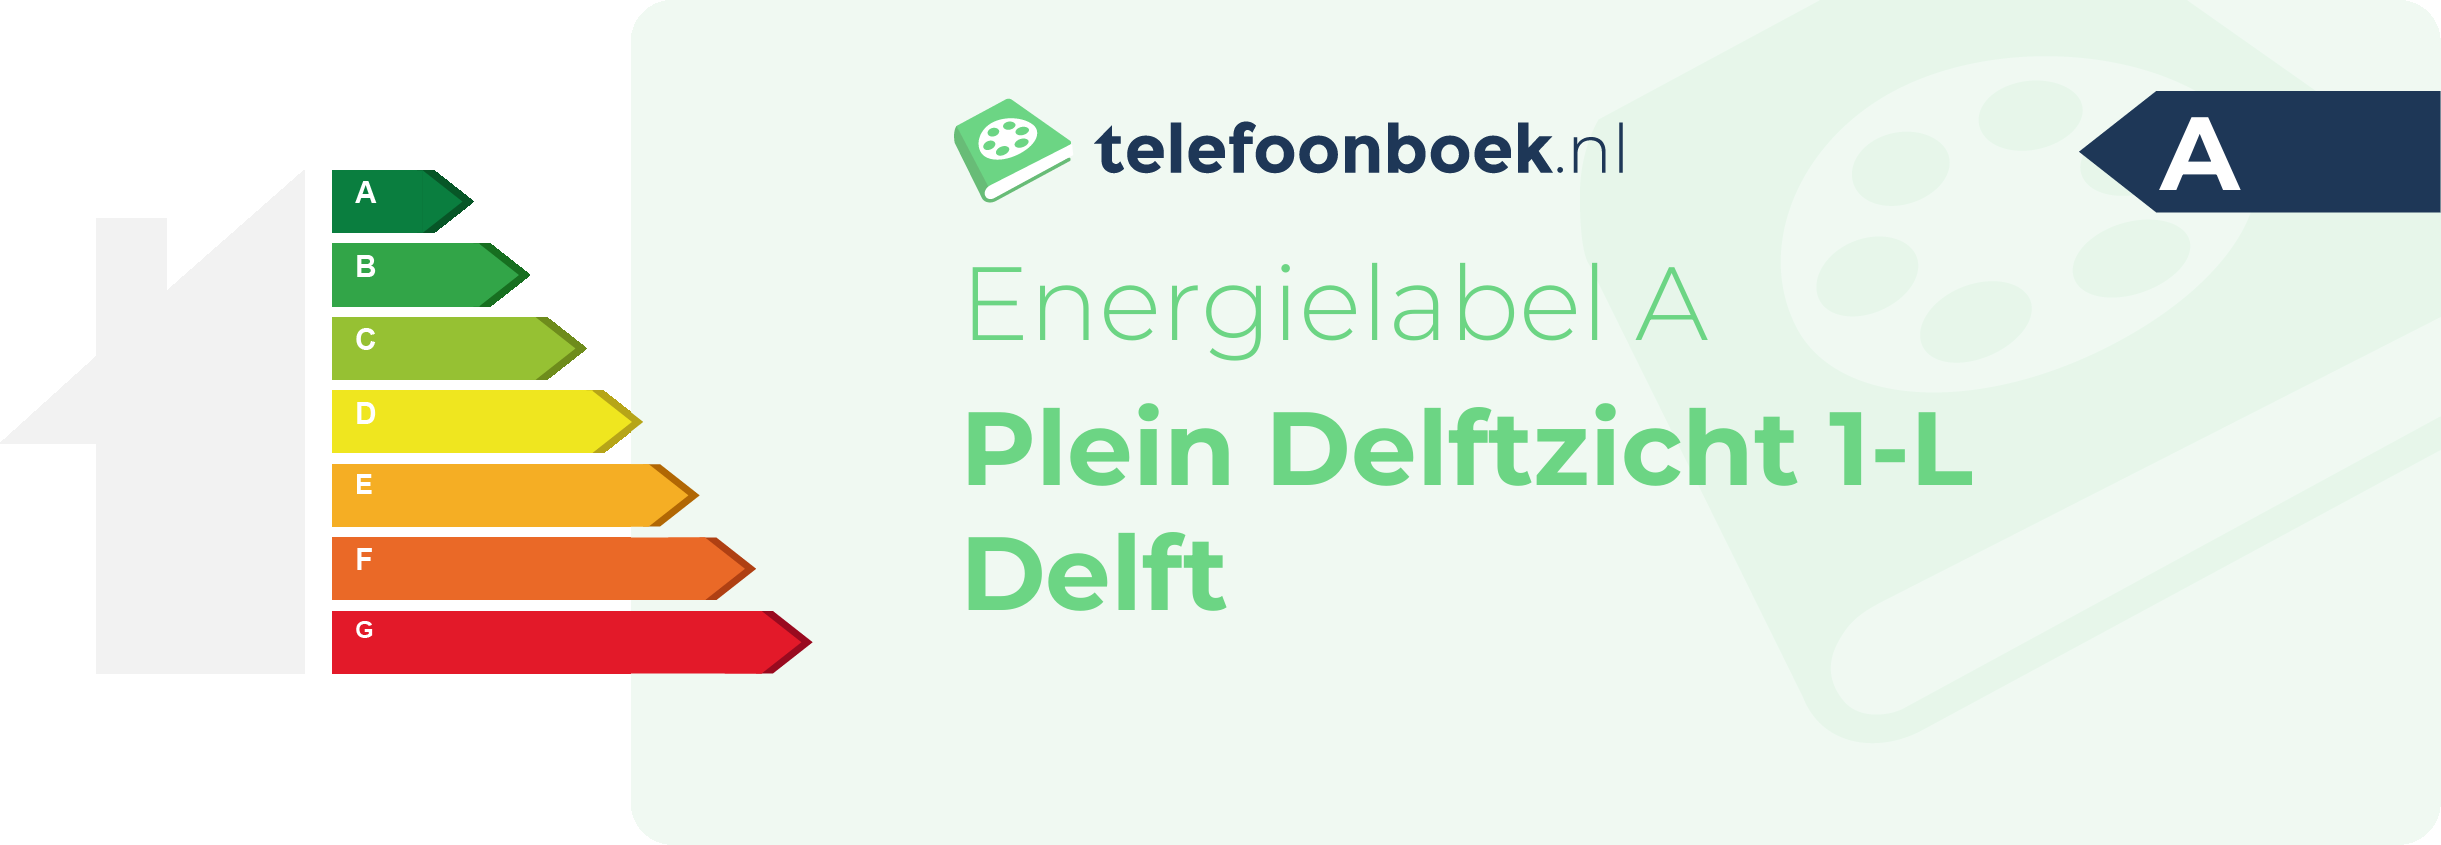 Energielabel Plein Delftzicht 1-L Delft